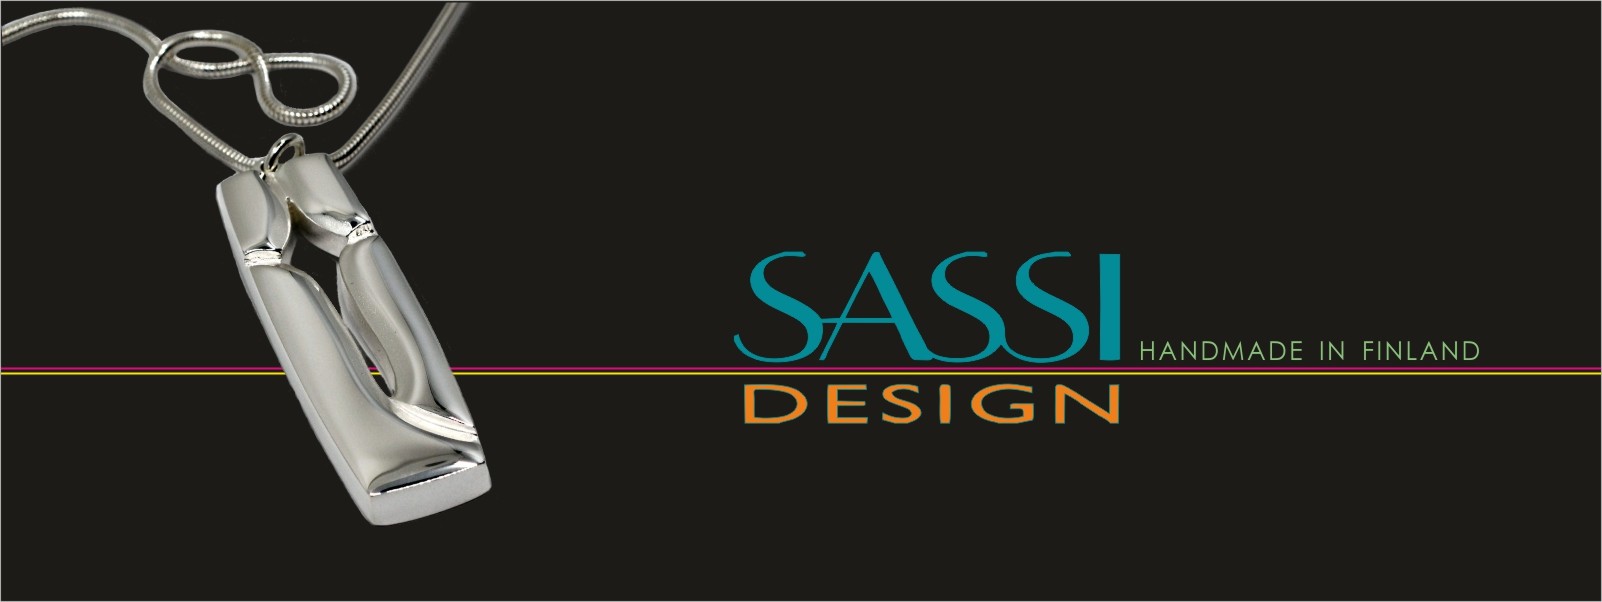 Sassi Design